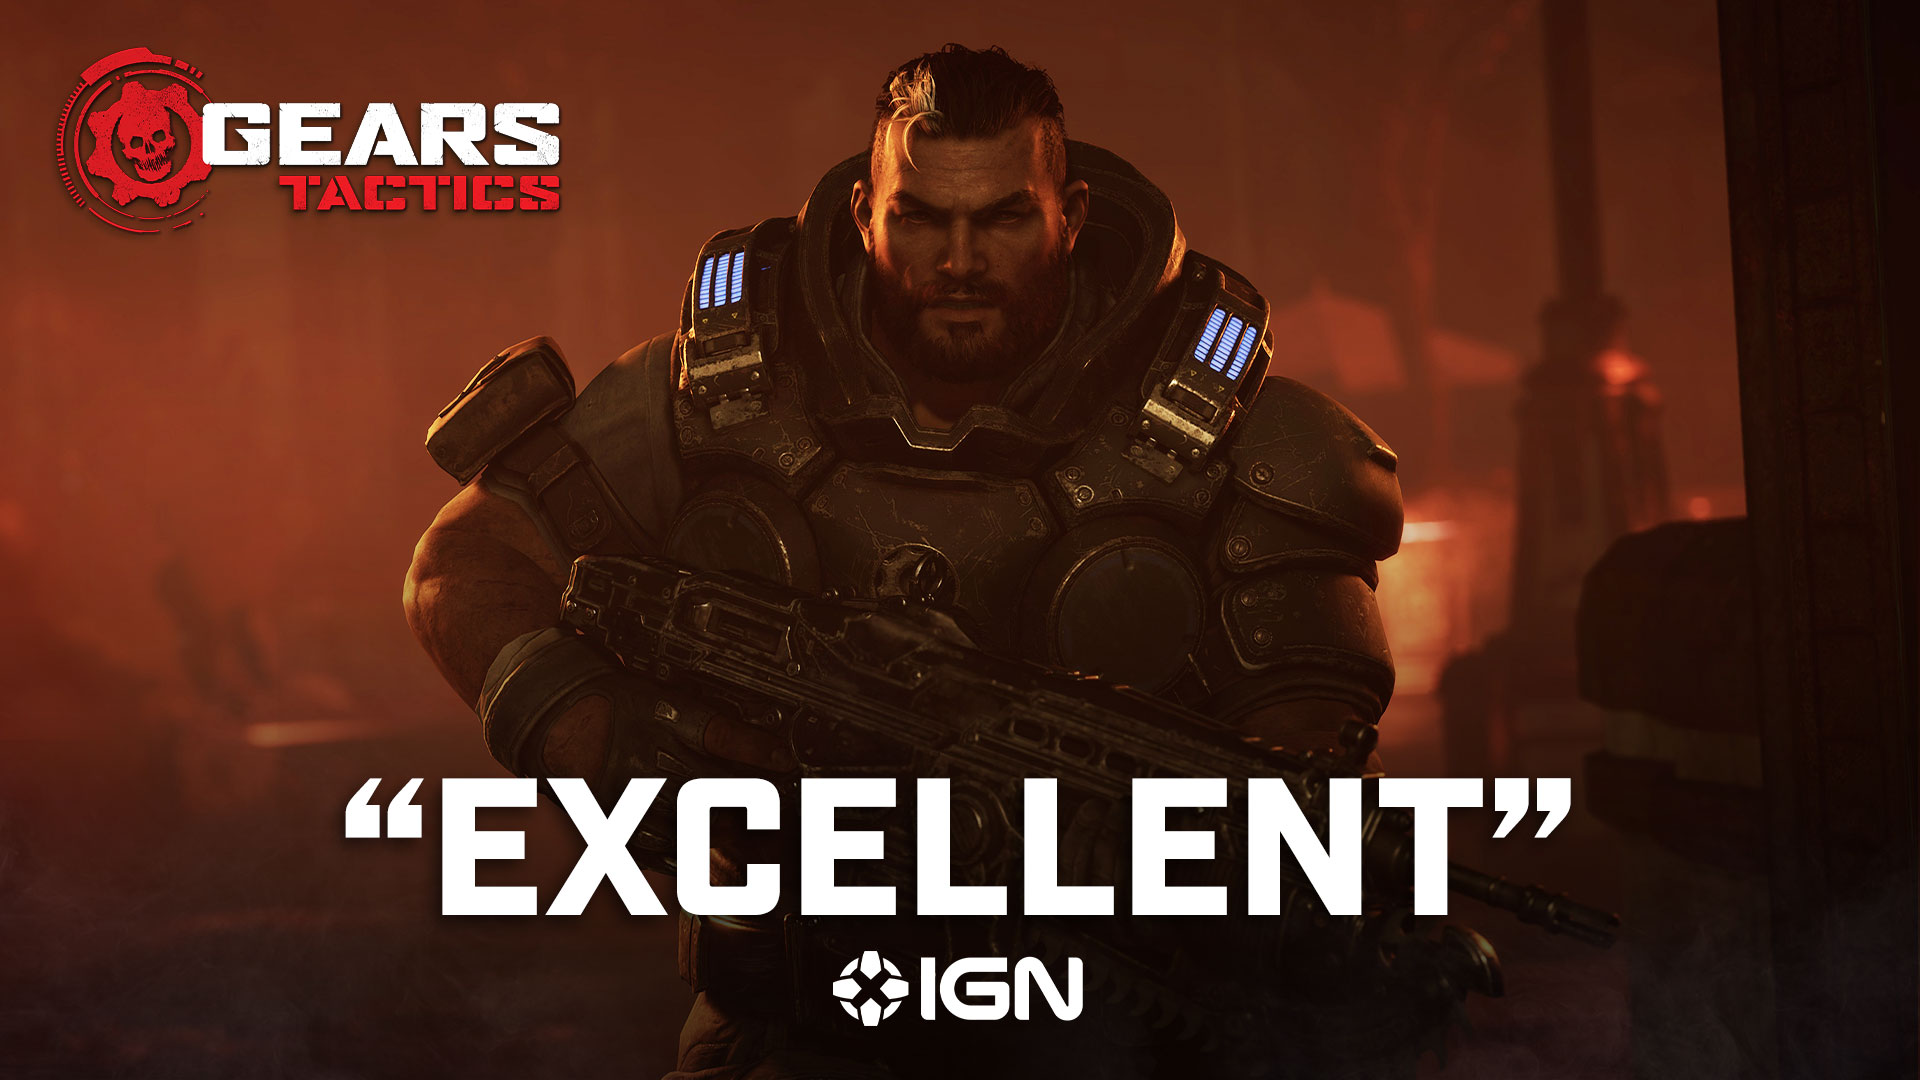 Gears Of War Games - IGN